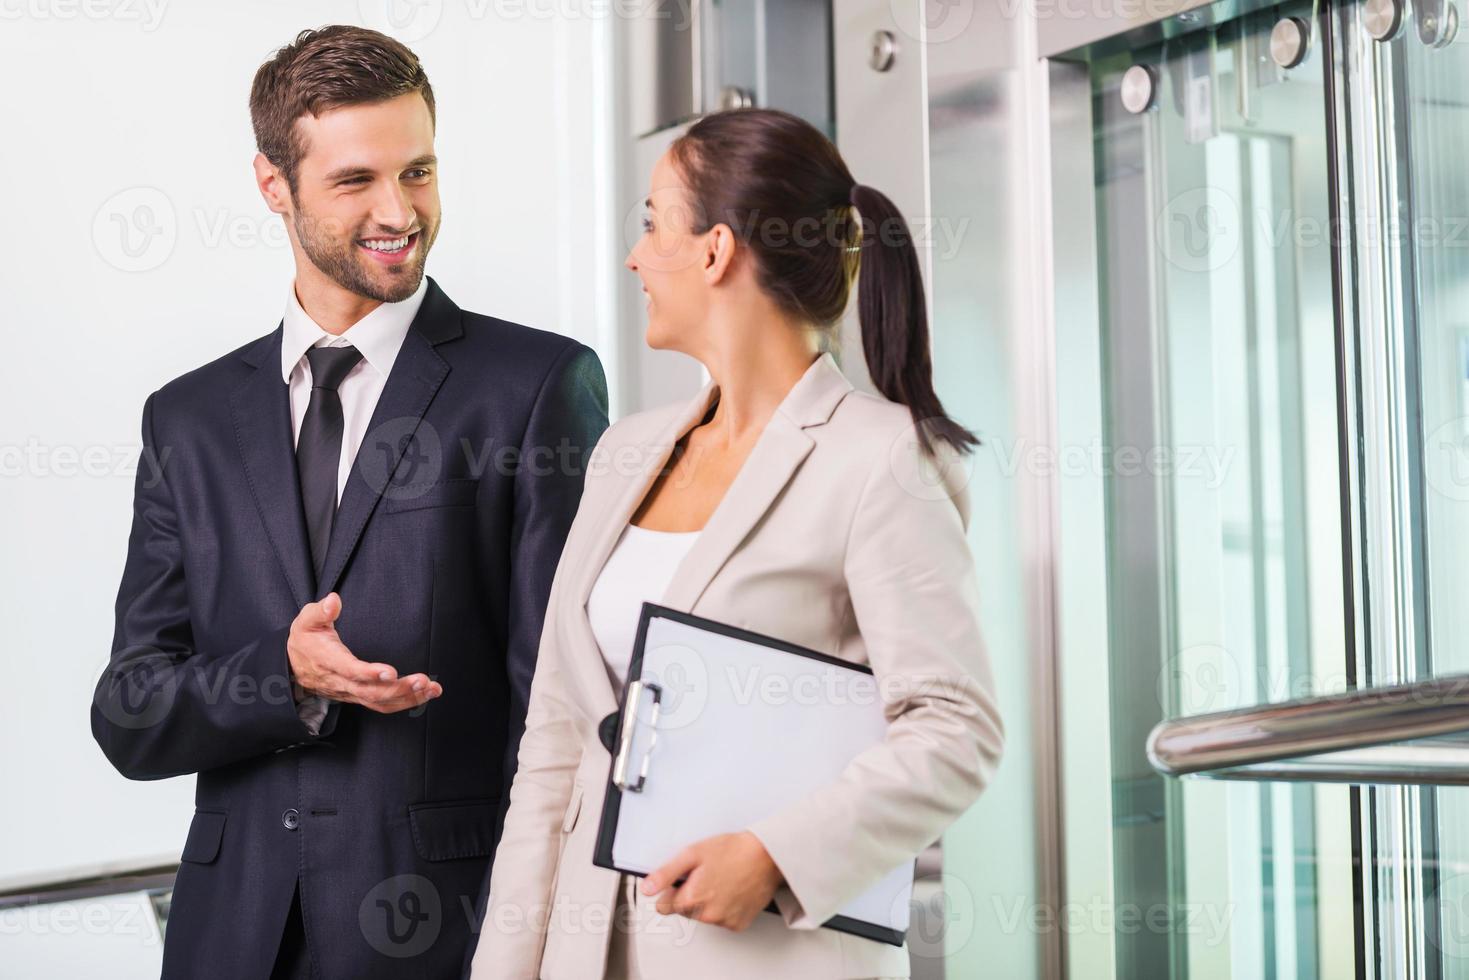 discuter du projet avec un collègue. deux hommes d'affaires joyeux discutant de quelque chose et souriant en sortant de l'ascenseur photo